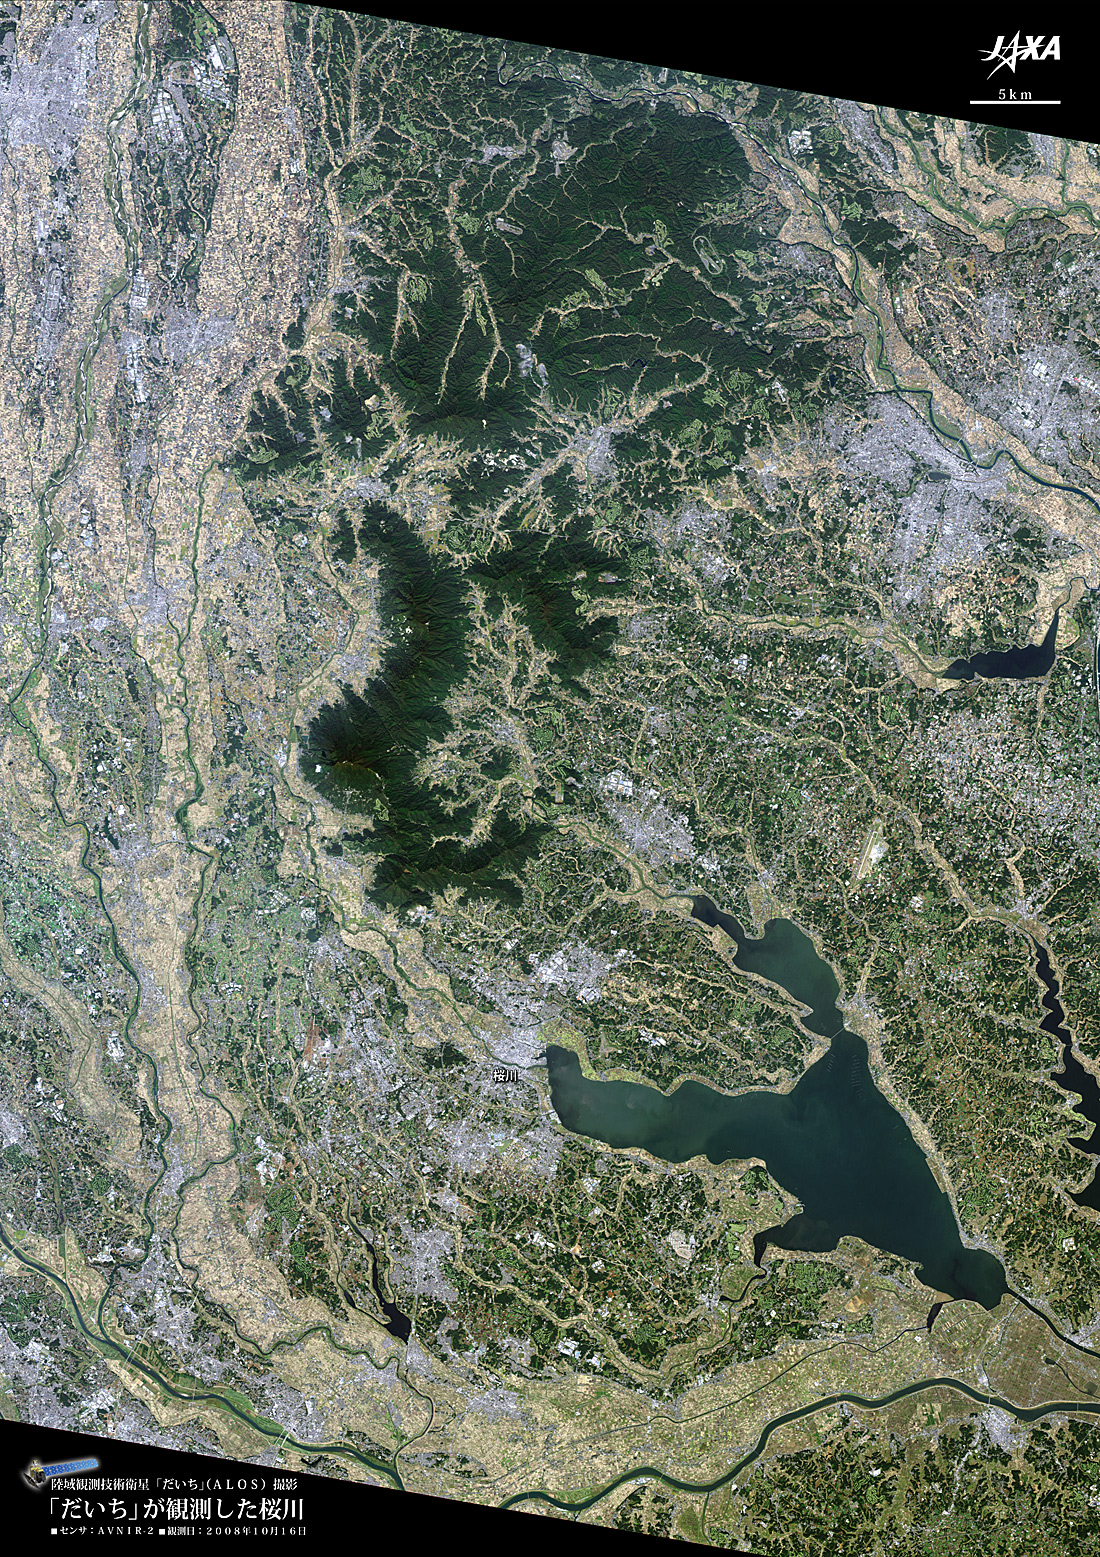 だいちから見た日本の都市 桜川流域:衛星画像（ポスター仕上げ）